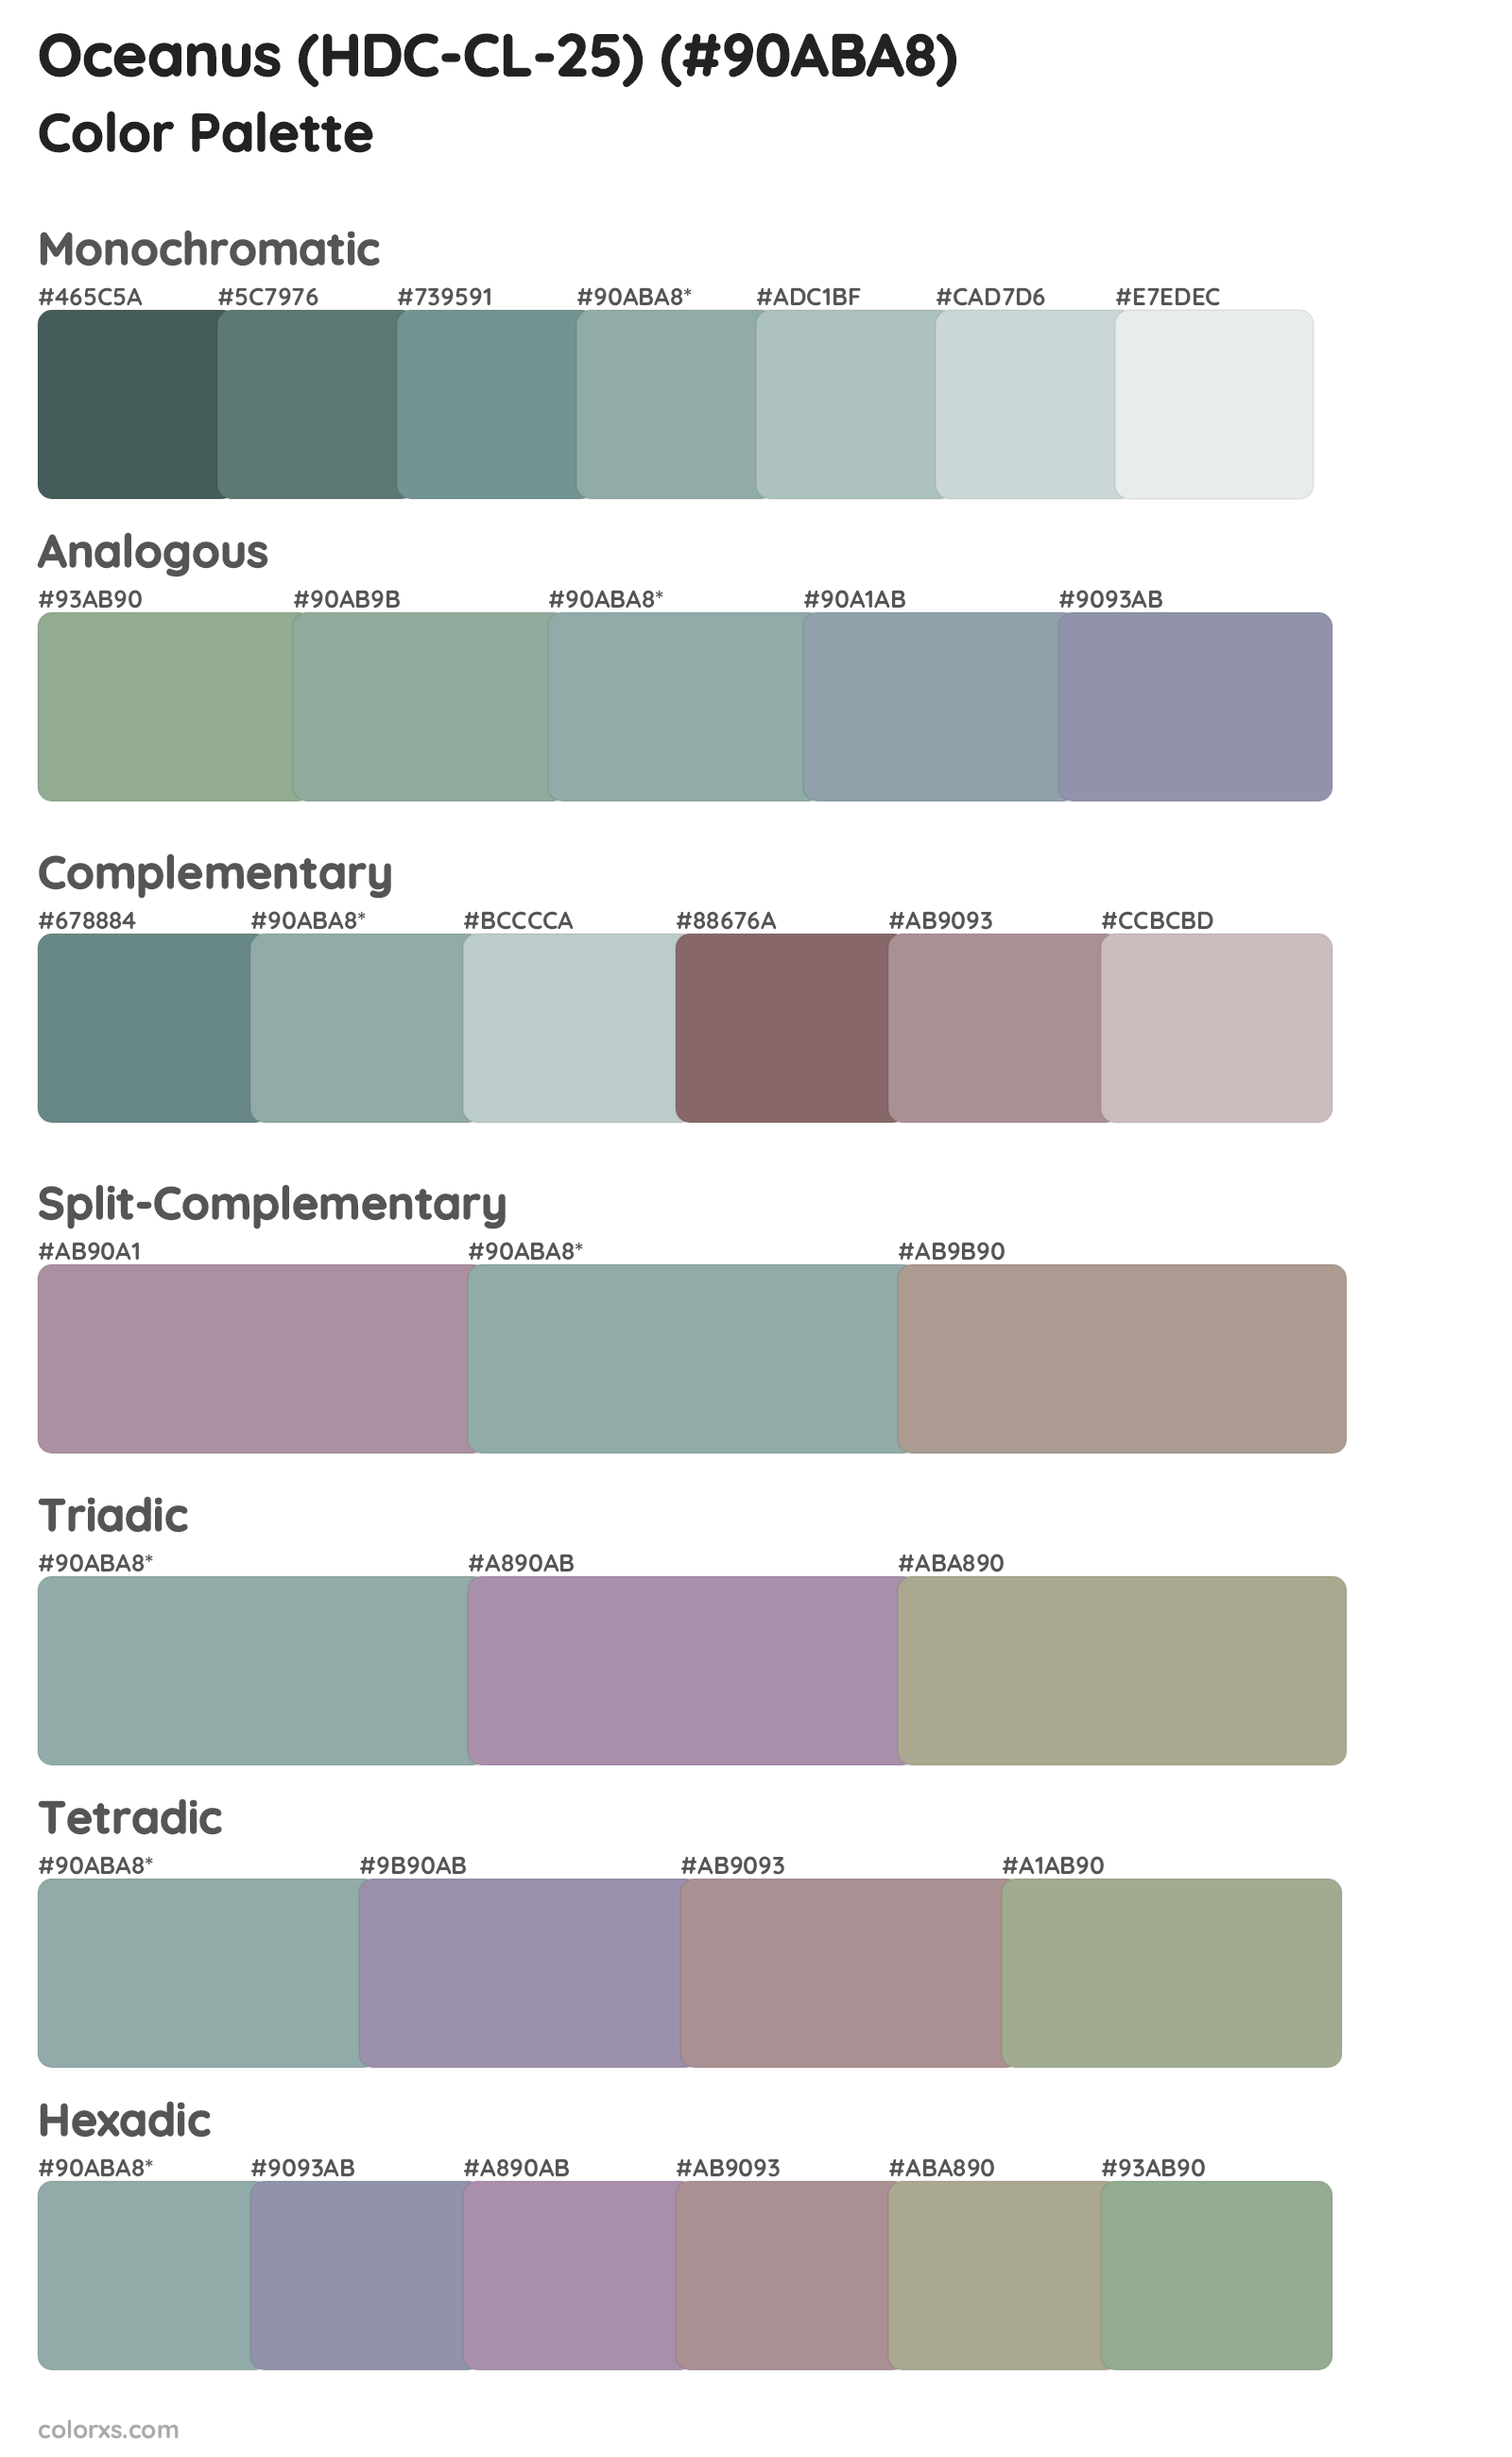 Oceanus (HDC-CL-25) Color Scheme Palettes